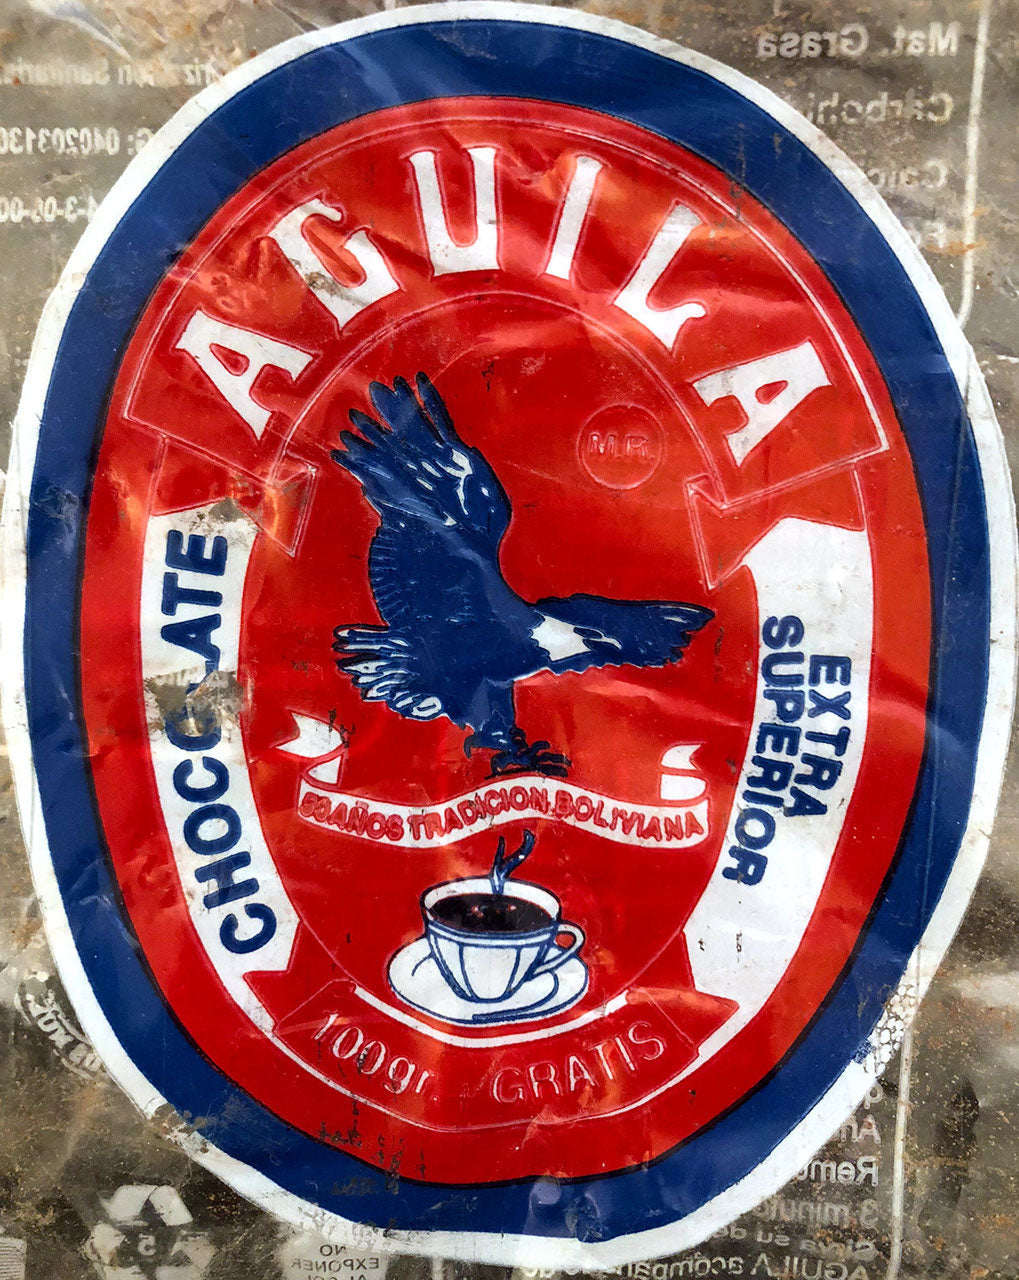 
                  
                    Aguila Trinkschokolade
                  
                